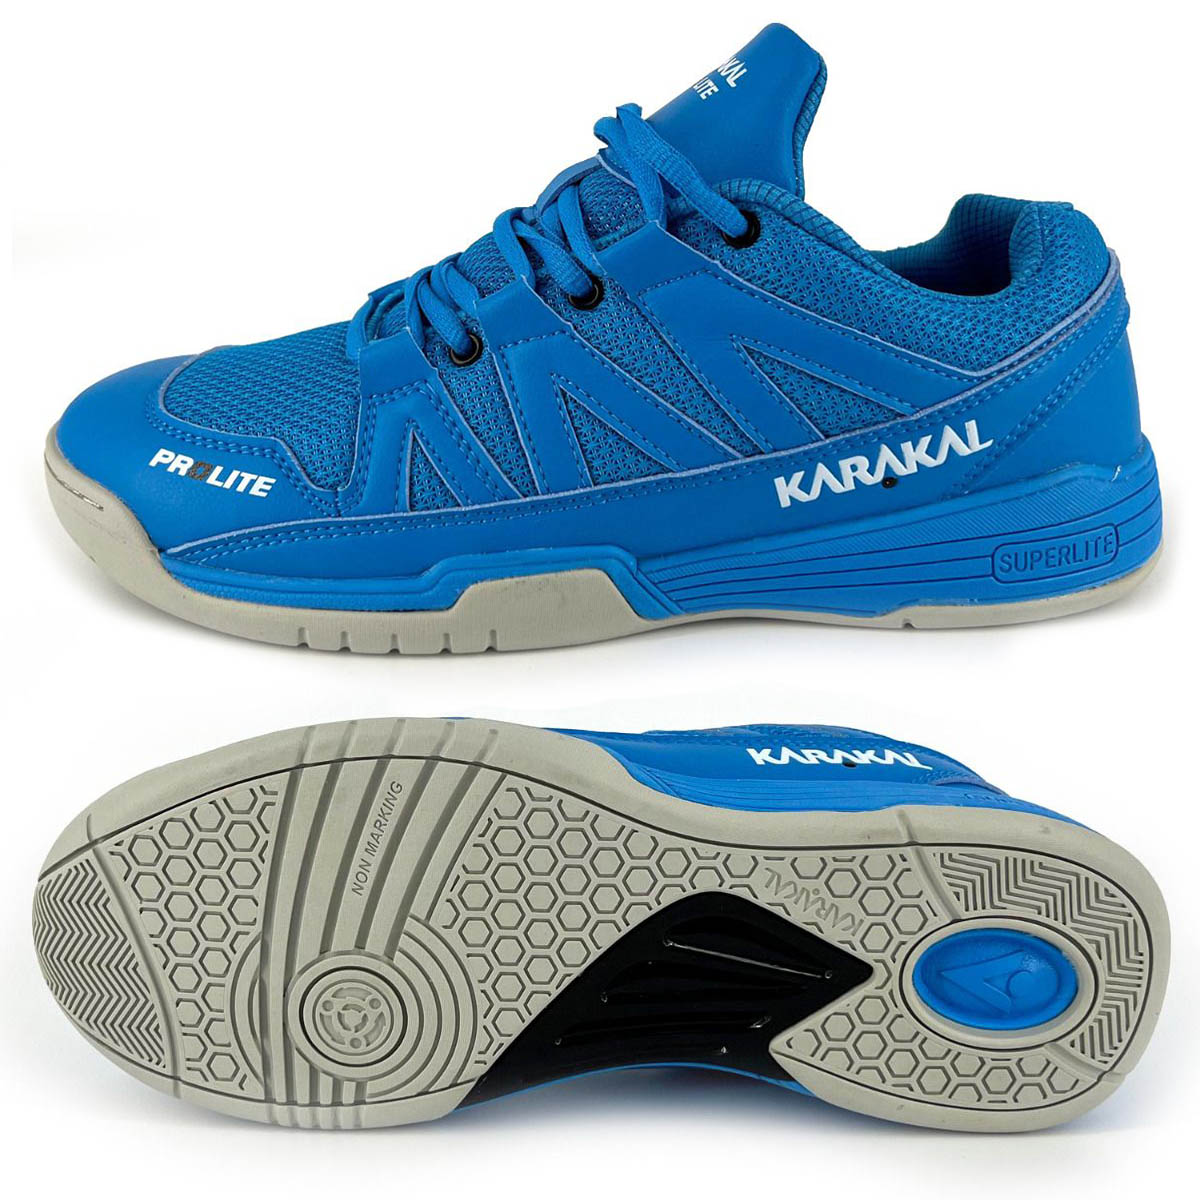 Karakal KF ProLite Indoor Court Shoes